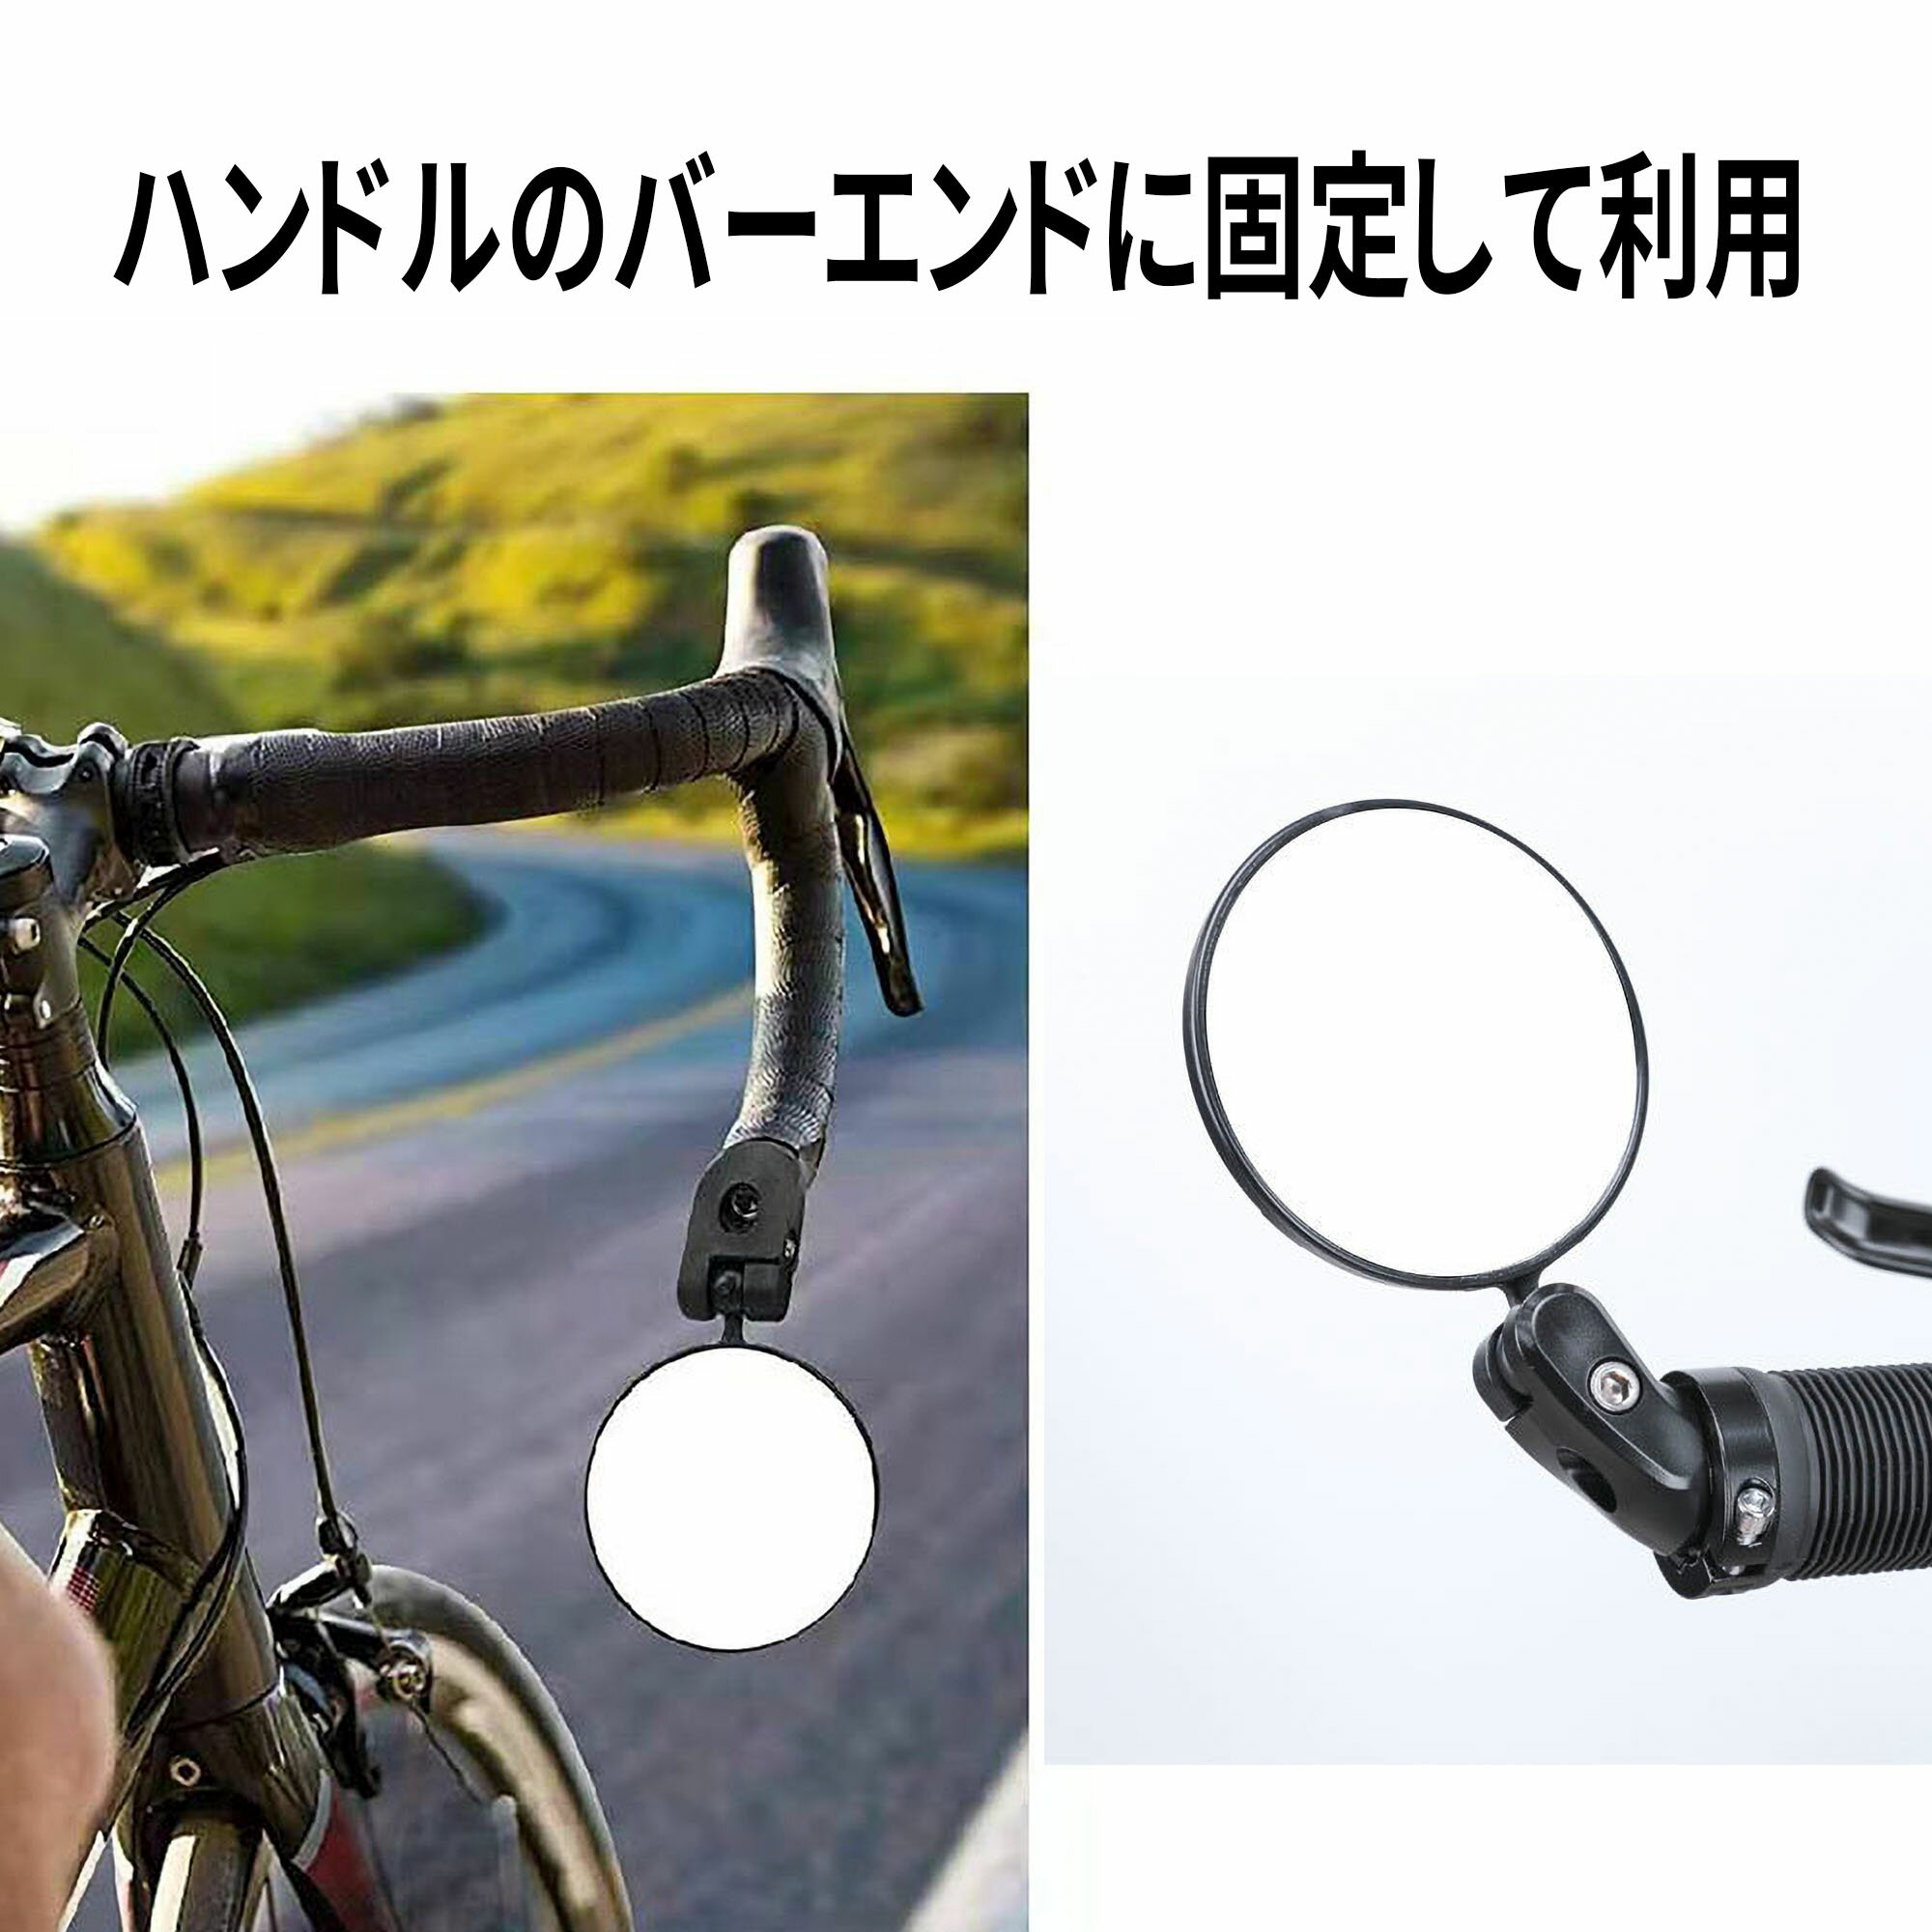 自転車用 バーエンドミラー 丸形 バックミラー (1個)自転車 鏡 サイクルミラー ミラー 後方確認 小型 おしゃれ 人気 ドロップハンドル サイドミラー 簡単 簡単取り付け セーフティミラー 安全確認 2